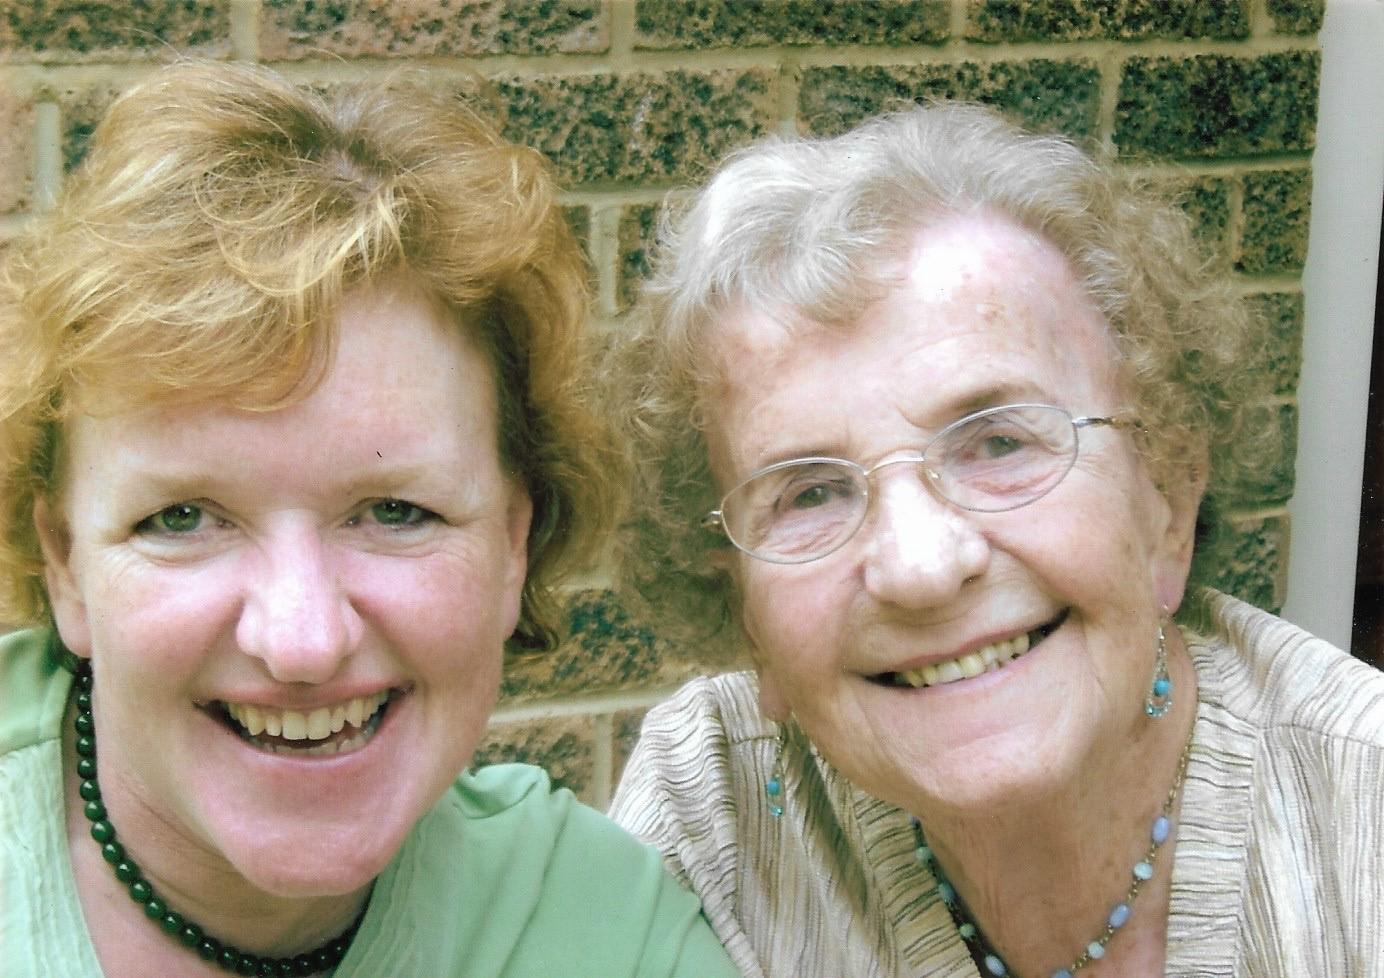 Gwen and my mum, Jane